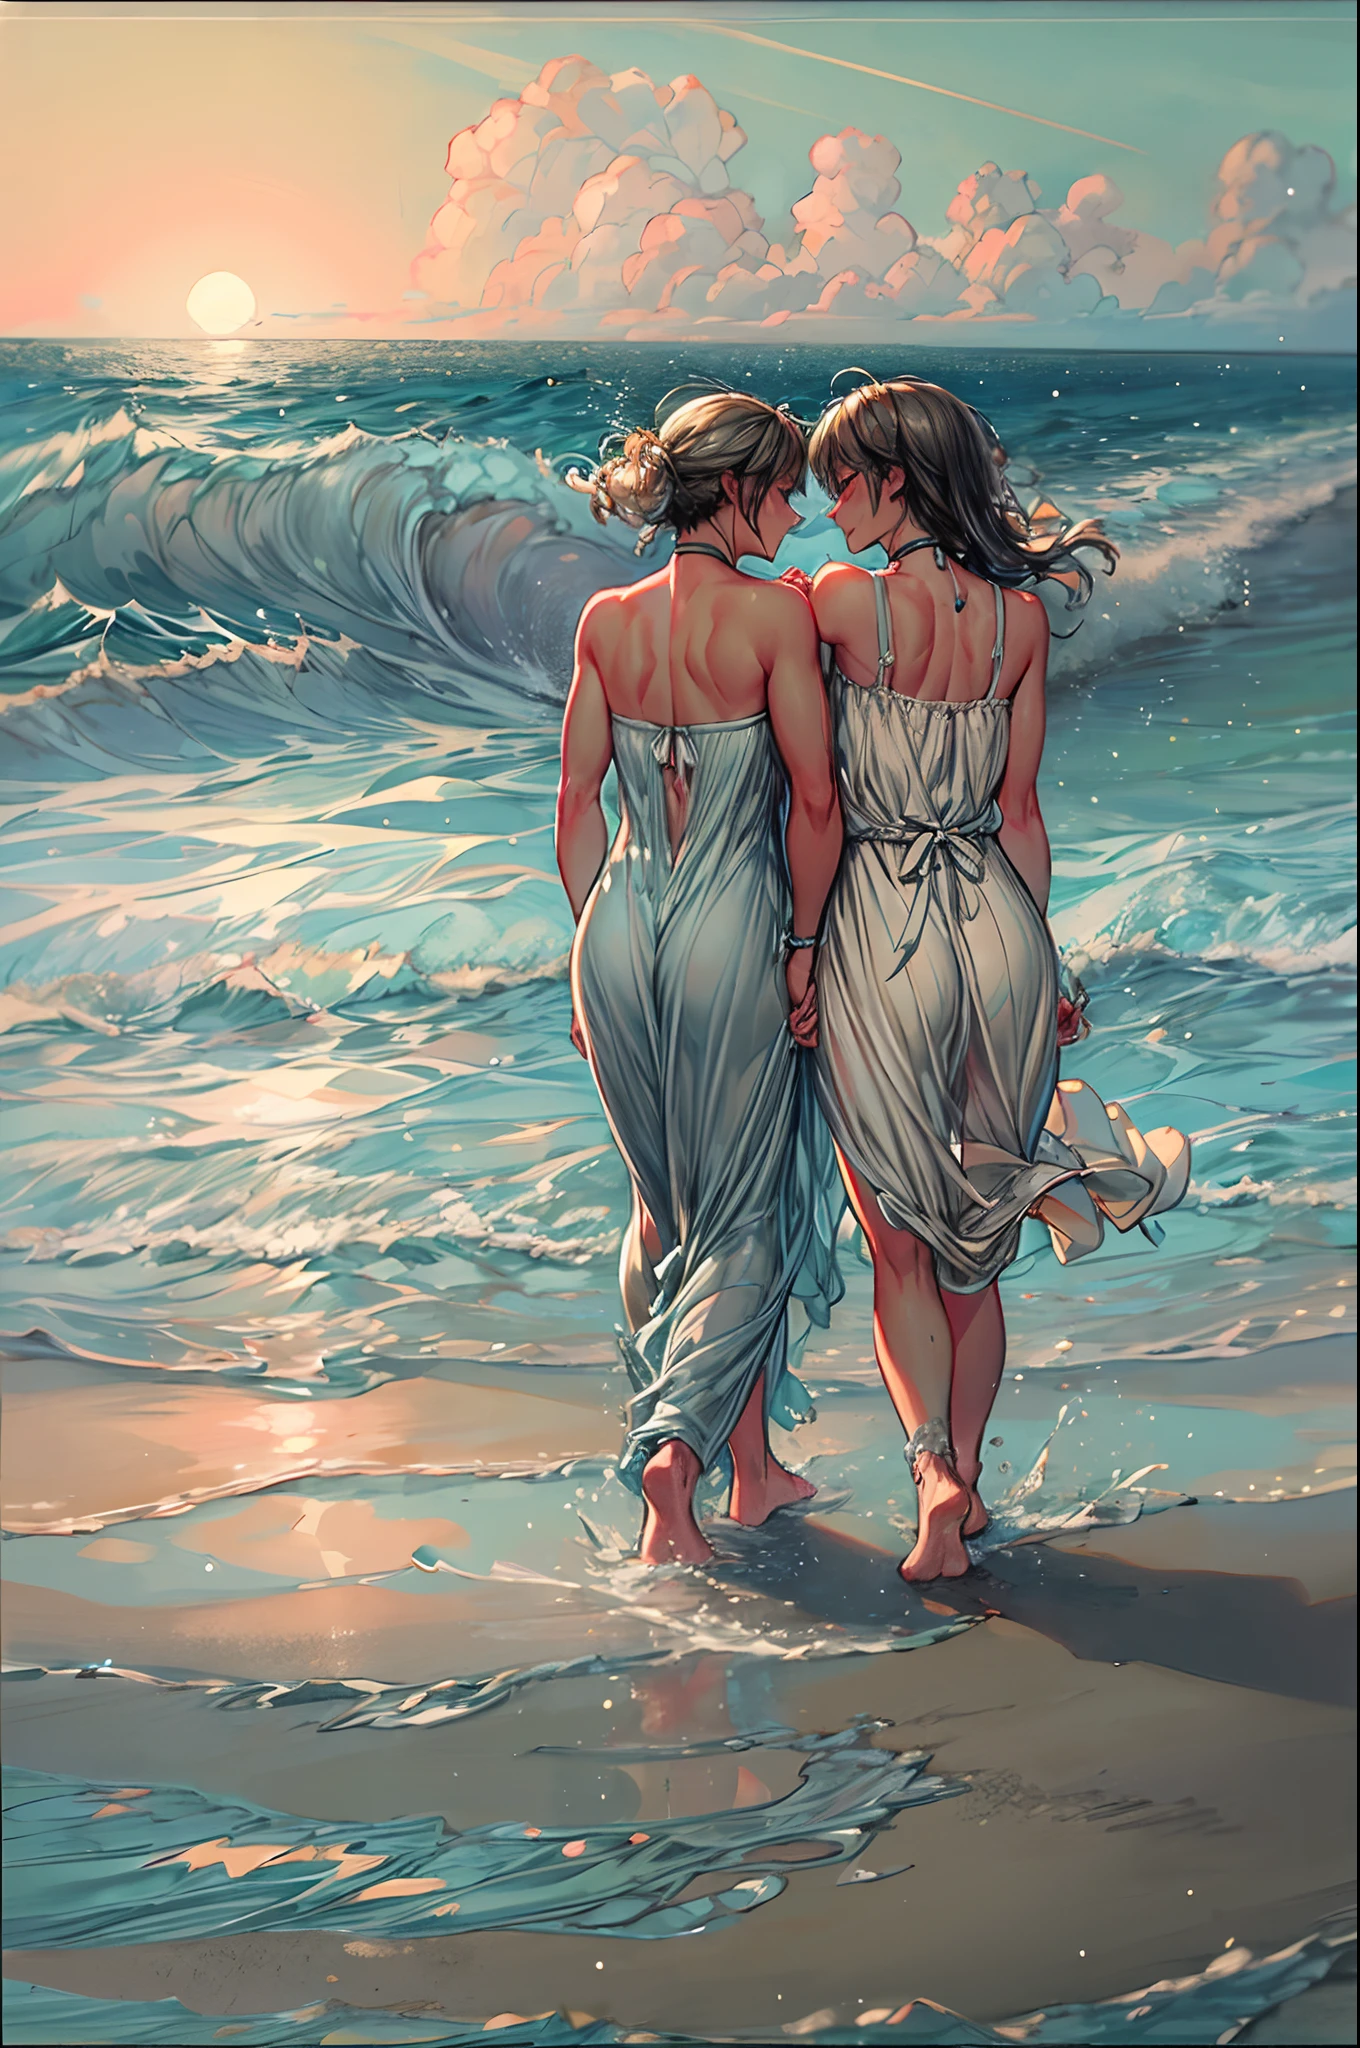 An einem mondbeschienenen Strand, zwei Frauen gehen Hand in Hand entlang der Küste, die Wellen plätschern sanft an ihre nackten Füße. Das silbrige Licht spiegelt sich im Wasser, ein romantischer Glanz auf ihre Gesichter. Mit den funkelnden Sternen am Himmel und dem fernen Klang der brechenden Wellen, Ihre Lippen treffen sich in einem zärtlichen Kuss voller Sehnsucht und Verbundenheit. Die salzige Brise trägt ihr Lachen und den Duft des Meeres, umhüllt sie mit einem heiteren und leidenschaftlichen Moment. Die Szene ist verträumt eingefangen, Soft-Fokus-Stil mit Pastellfarben und sanften Pinselstrichen, die zeitlose Natur ihrer Liebe vermitteln.